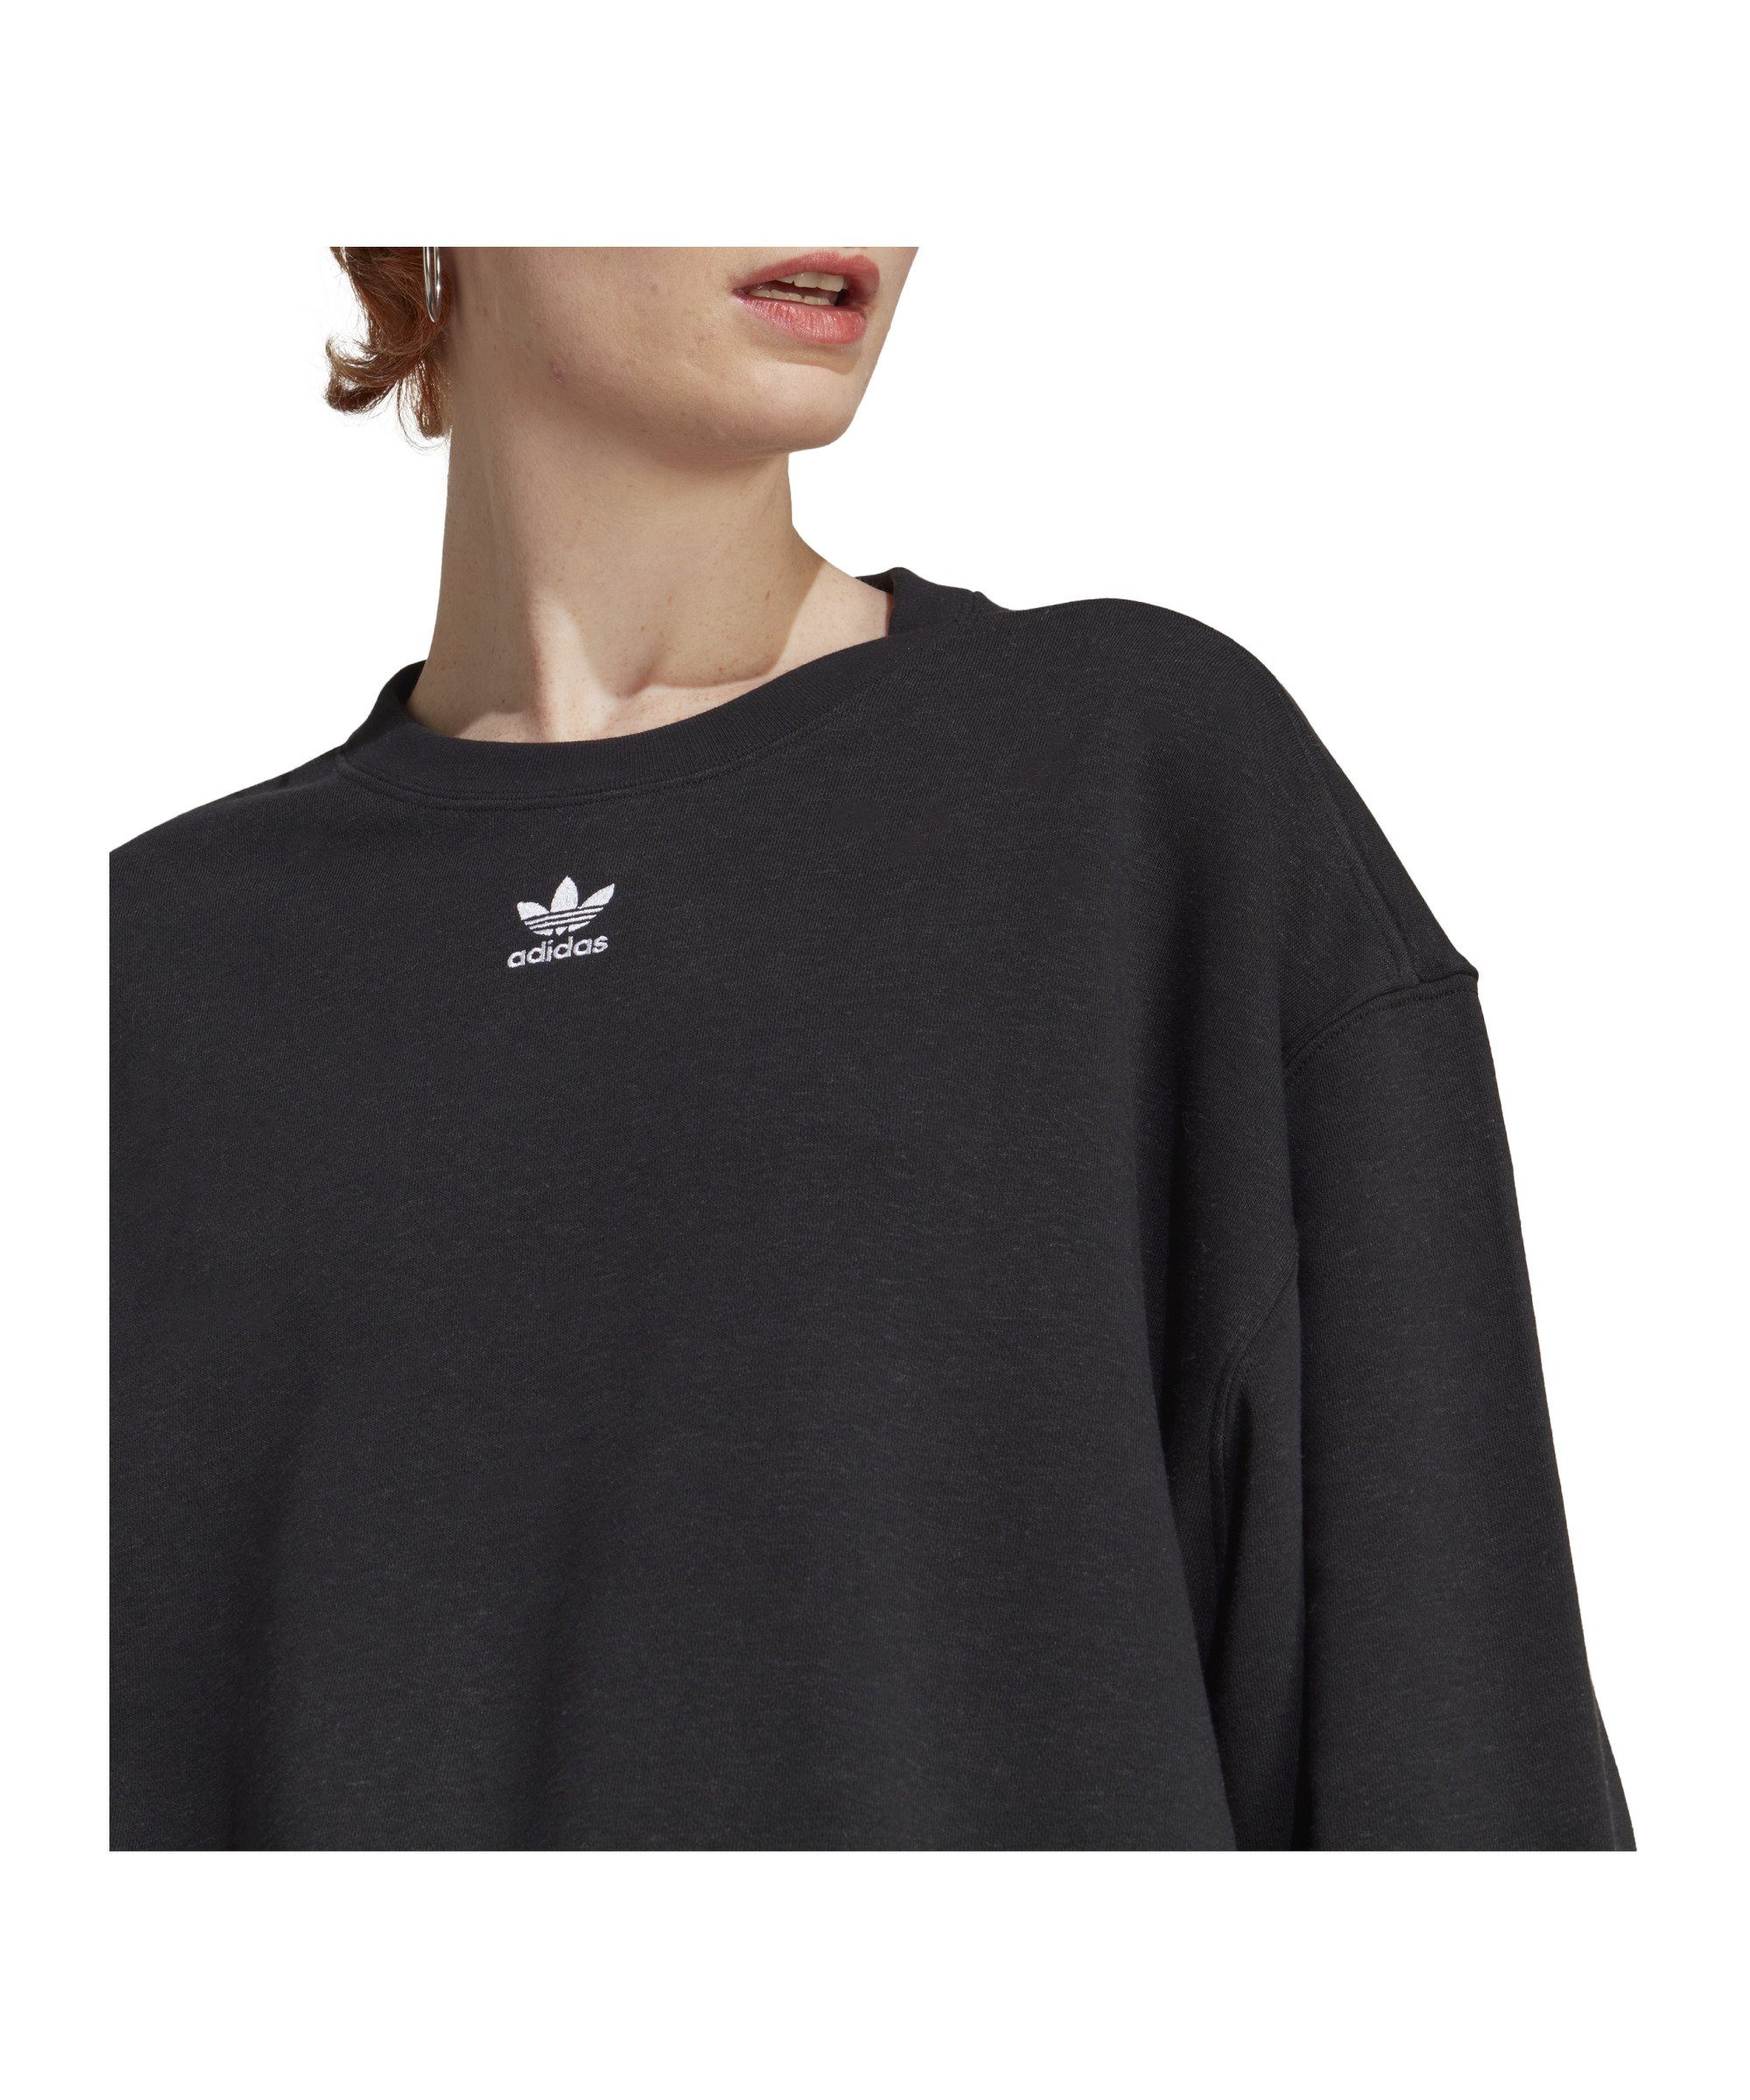 Damen Sweatshirt Originals Ess. Sweater schwarz adidas